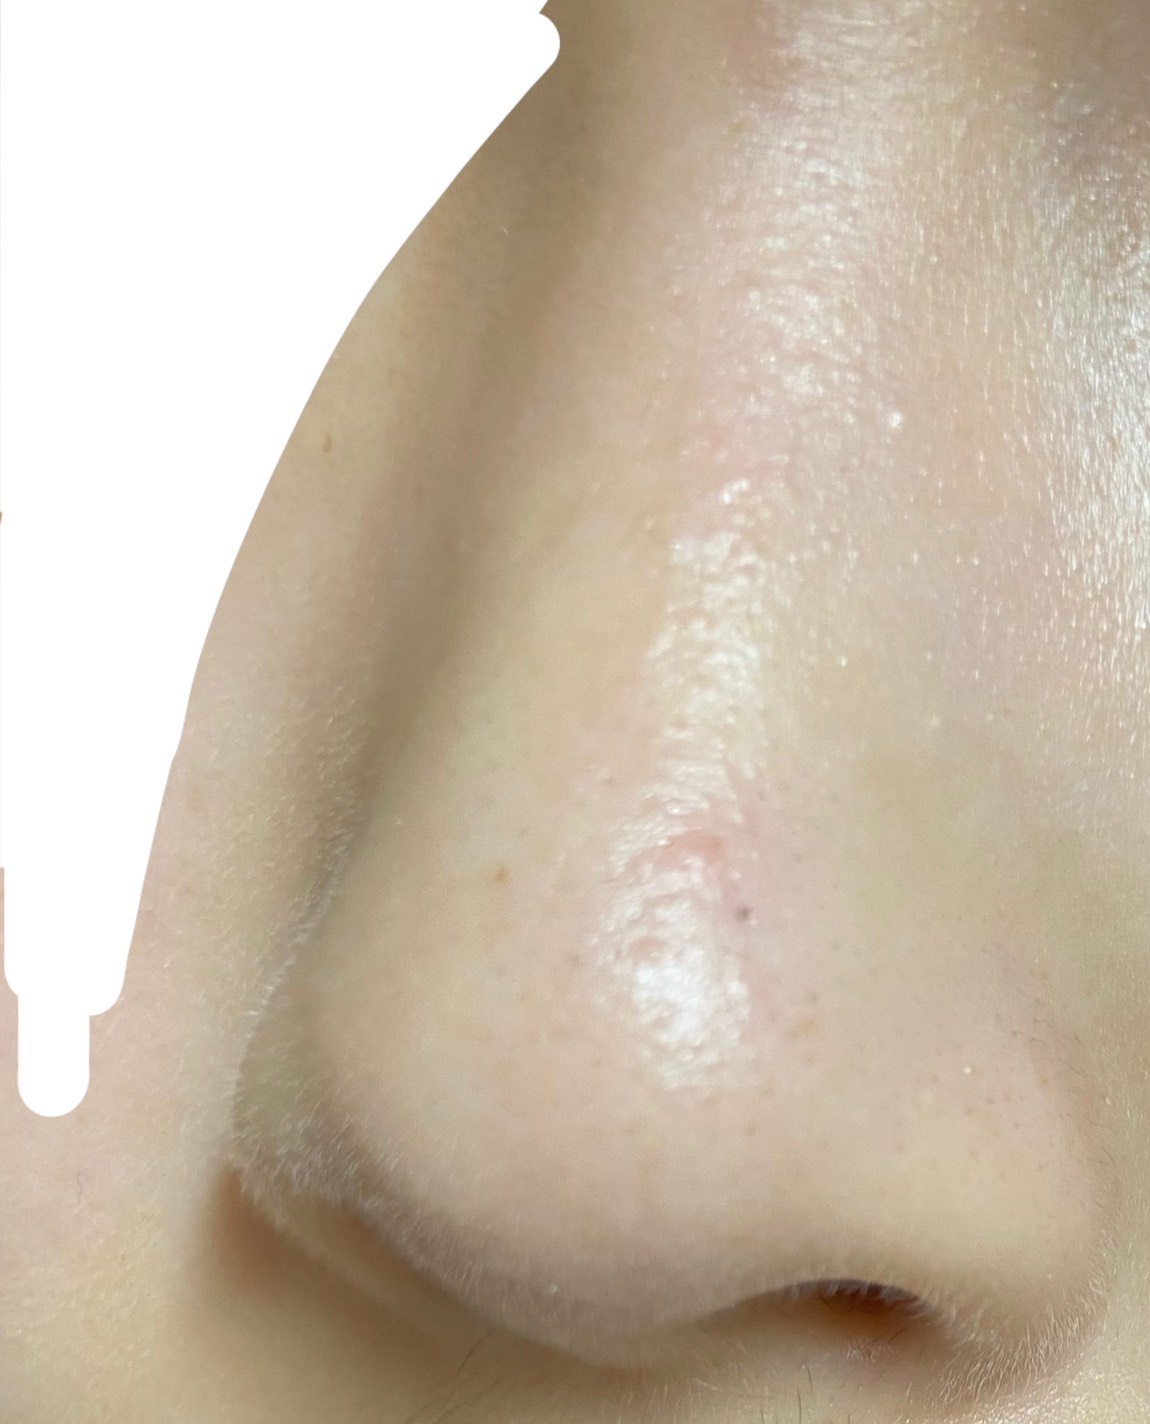 いちご鼻改善のq A一覧 美容 化粧品情報はアットコスメ